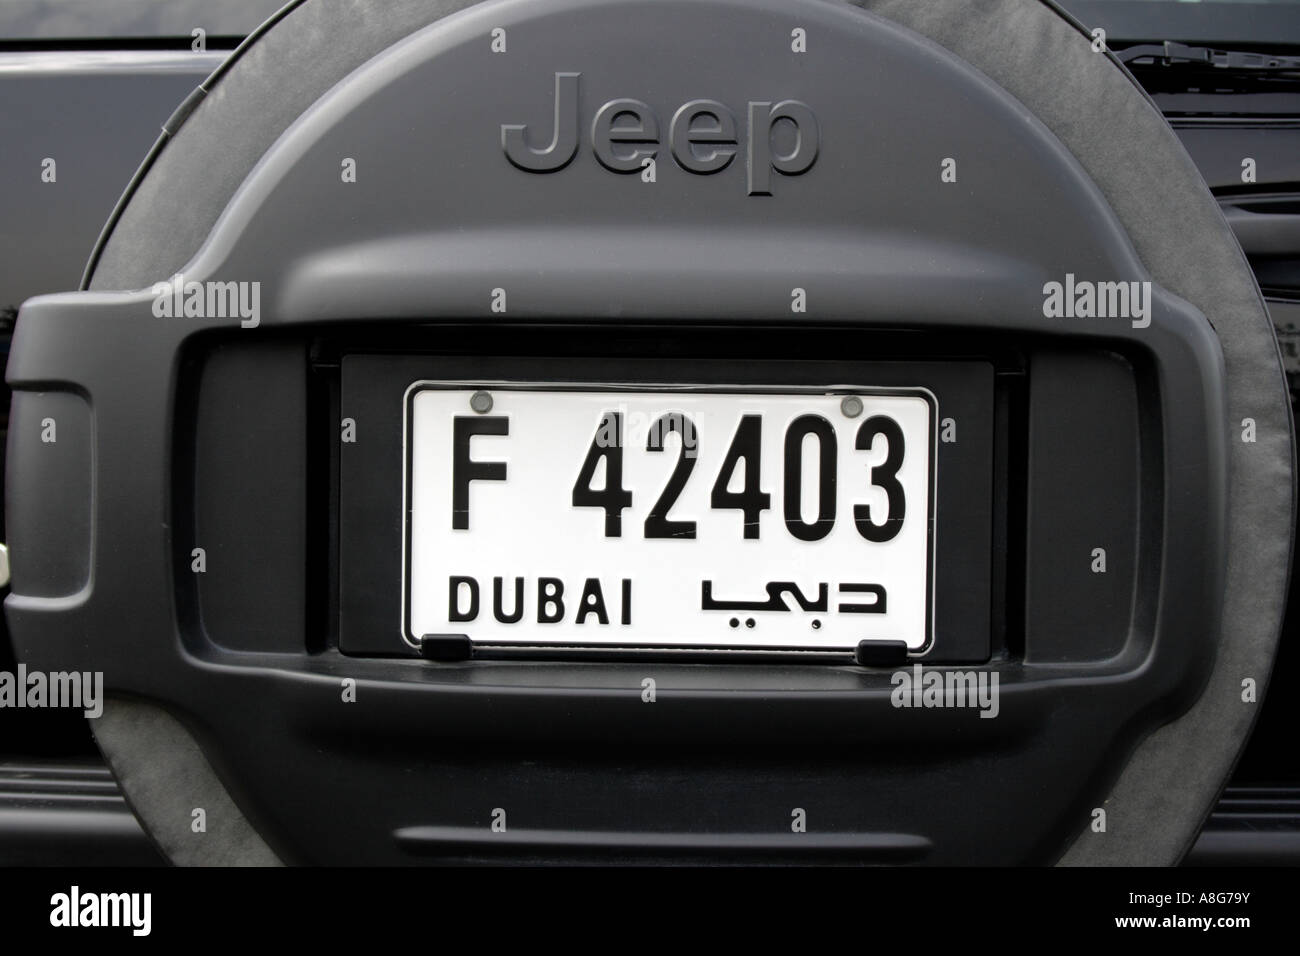 Dubai-Kfz-Kennzeichen auf schwarzen Jeep, Vereinigte Arabische Emirate. Foto: Willy Matheisl Stockfoto